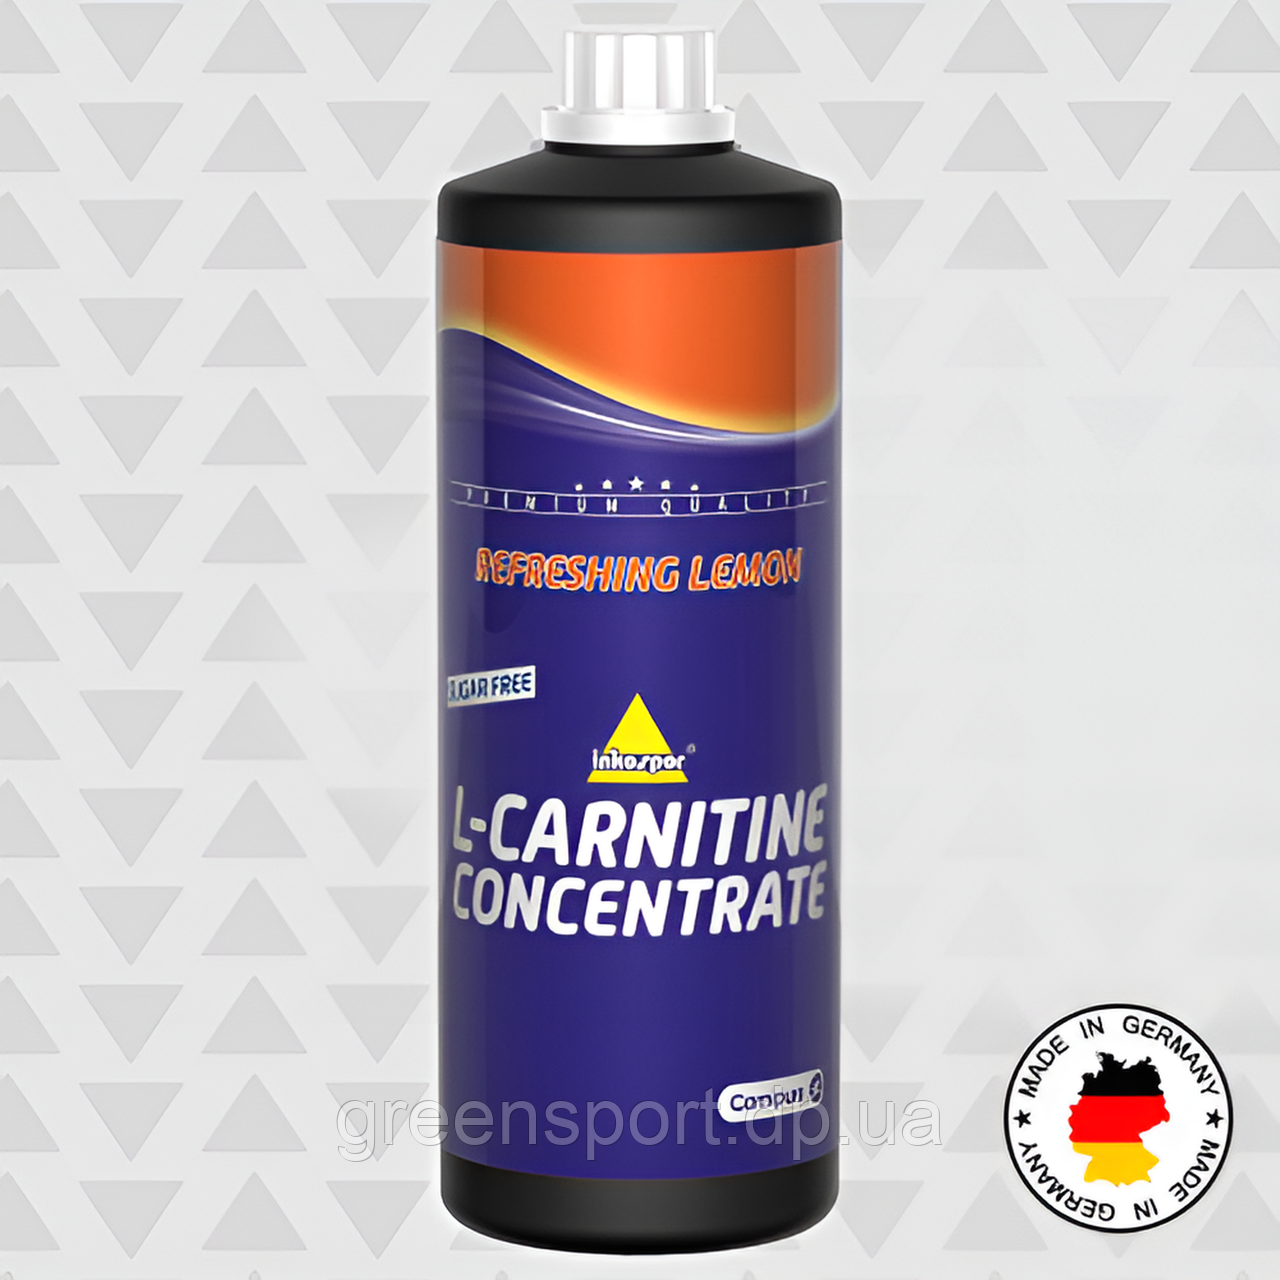 Inkospor L-Carnitine Concentrate 1000 мл, жироспалювачі для спортсменів, L-карнітин, для схуднення, смак лимон